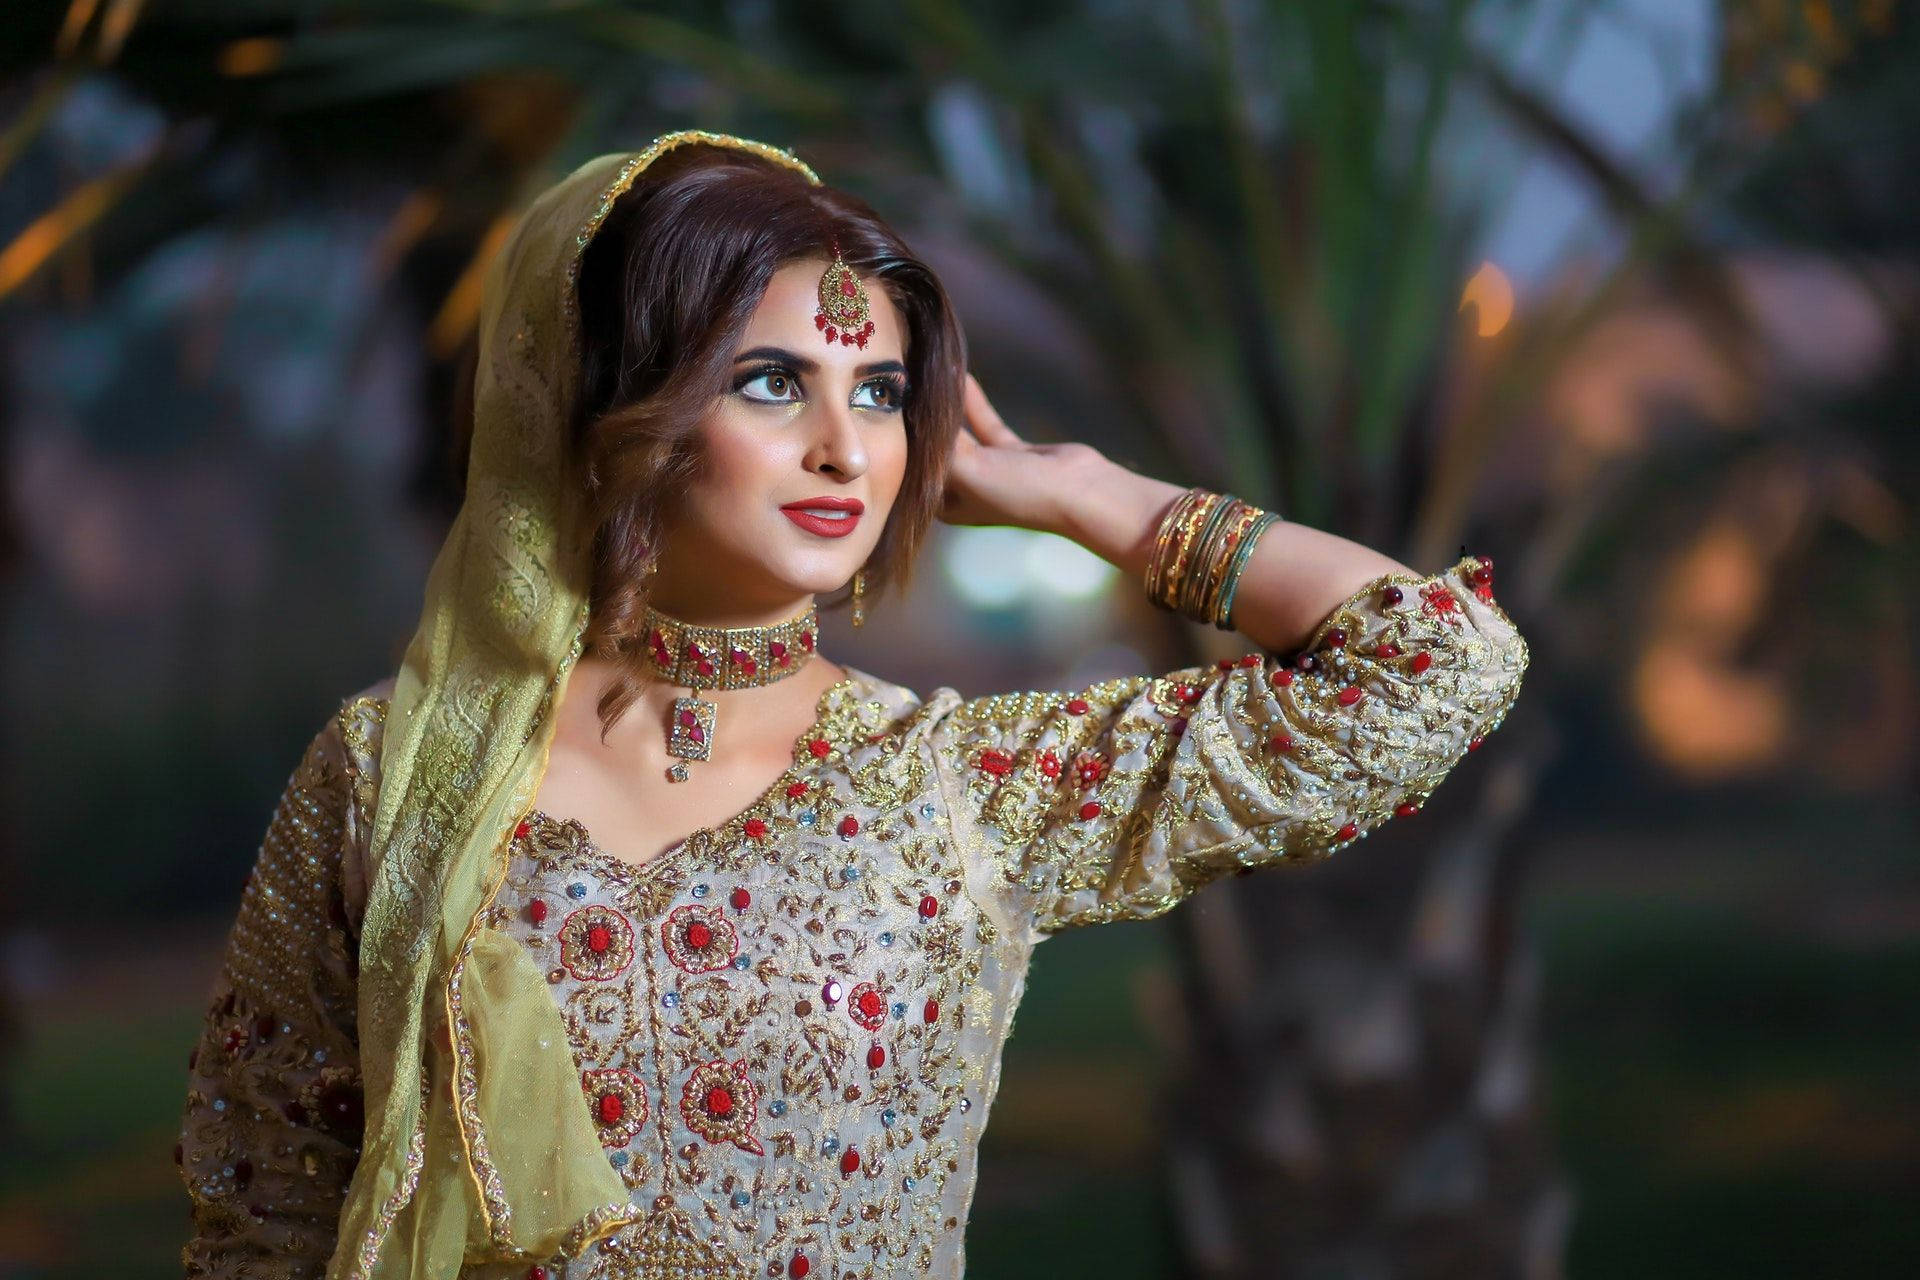 Beautiful Woman In A Sari Background